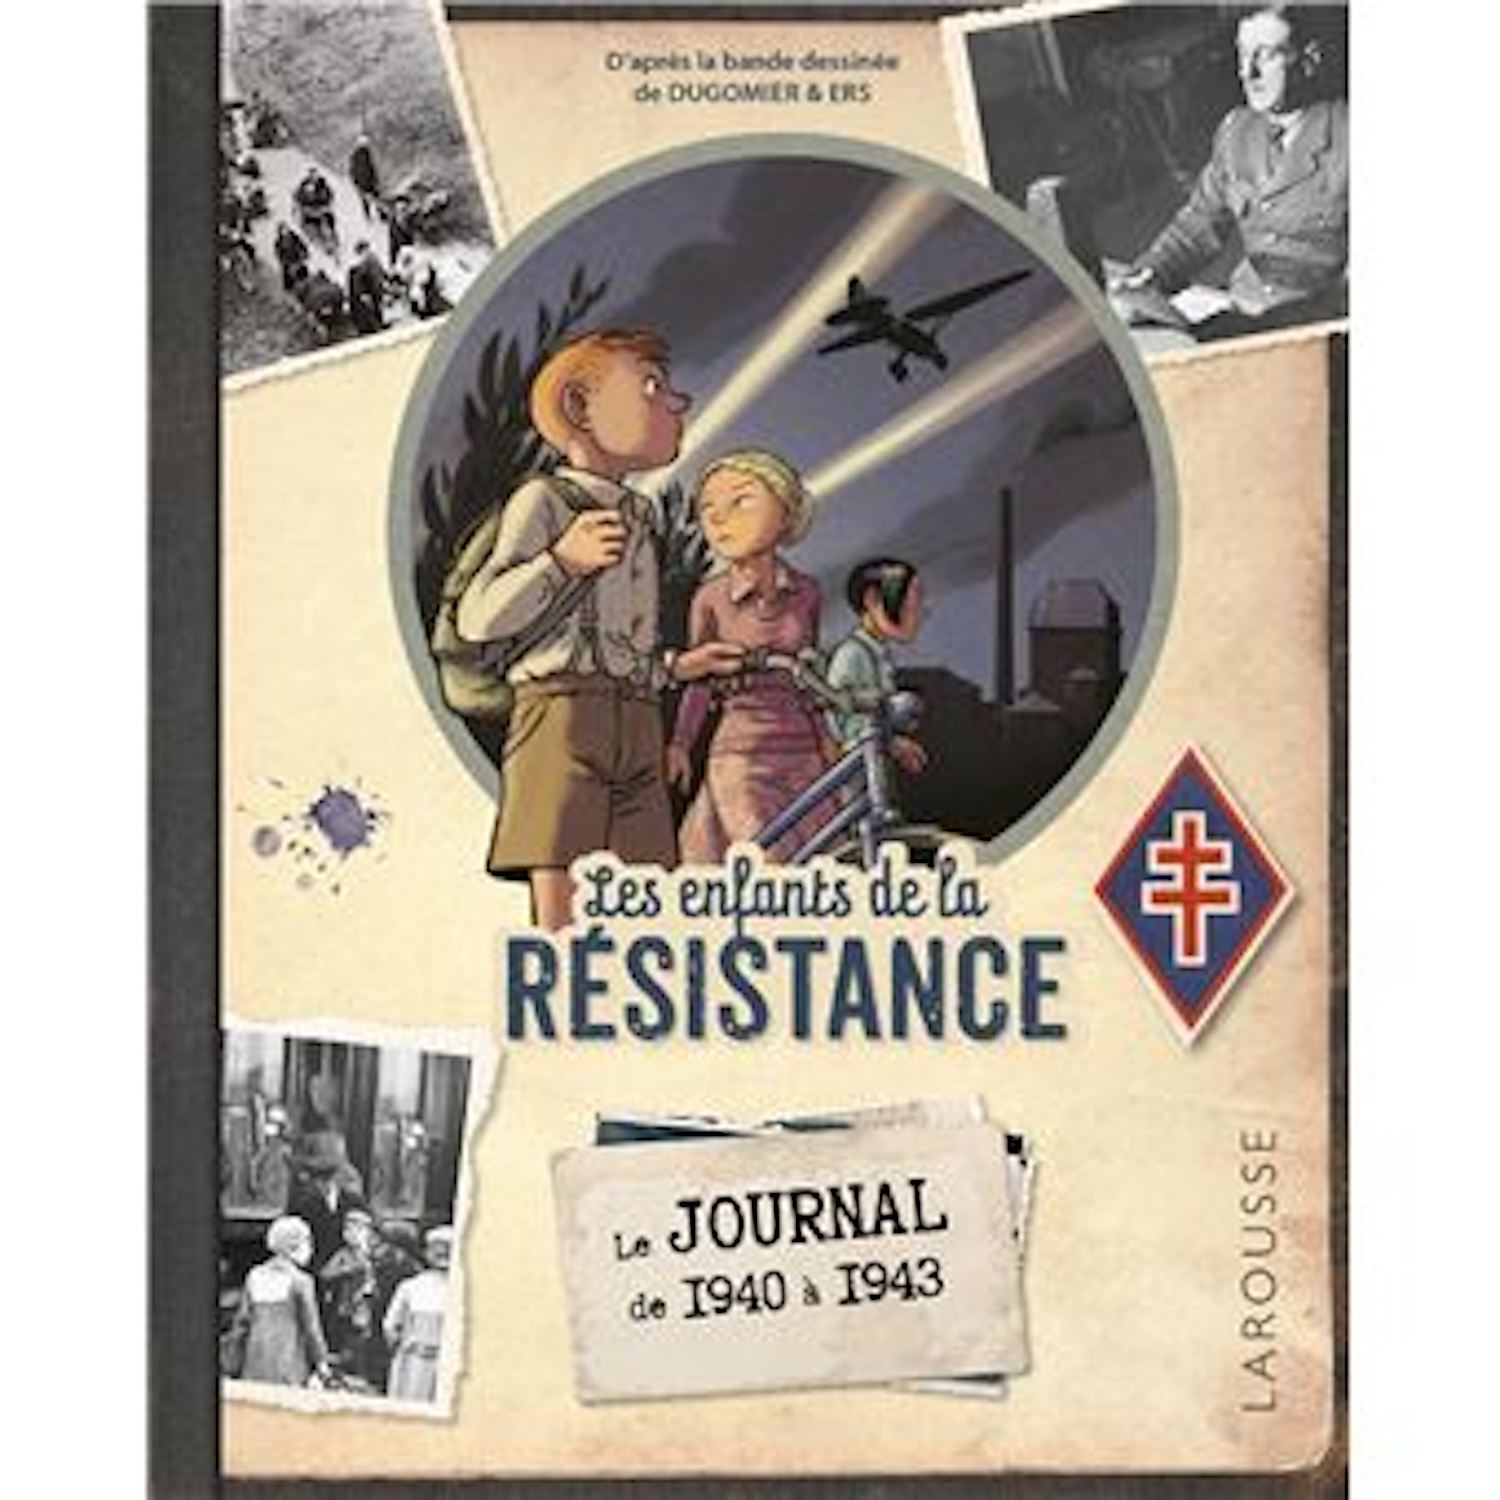 Le Journal des Enfants de la Résistance : un complément () - ActuaBD